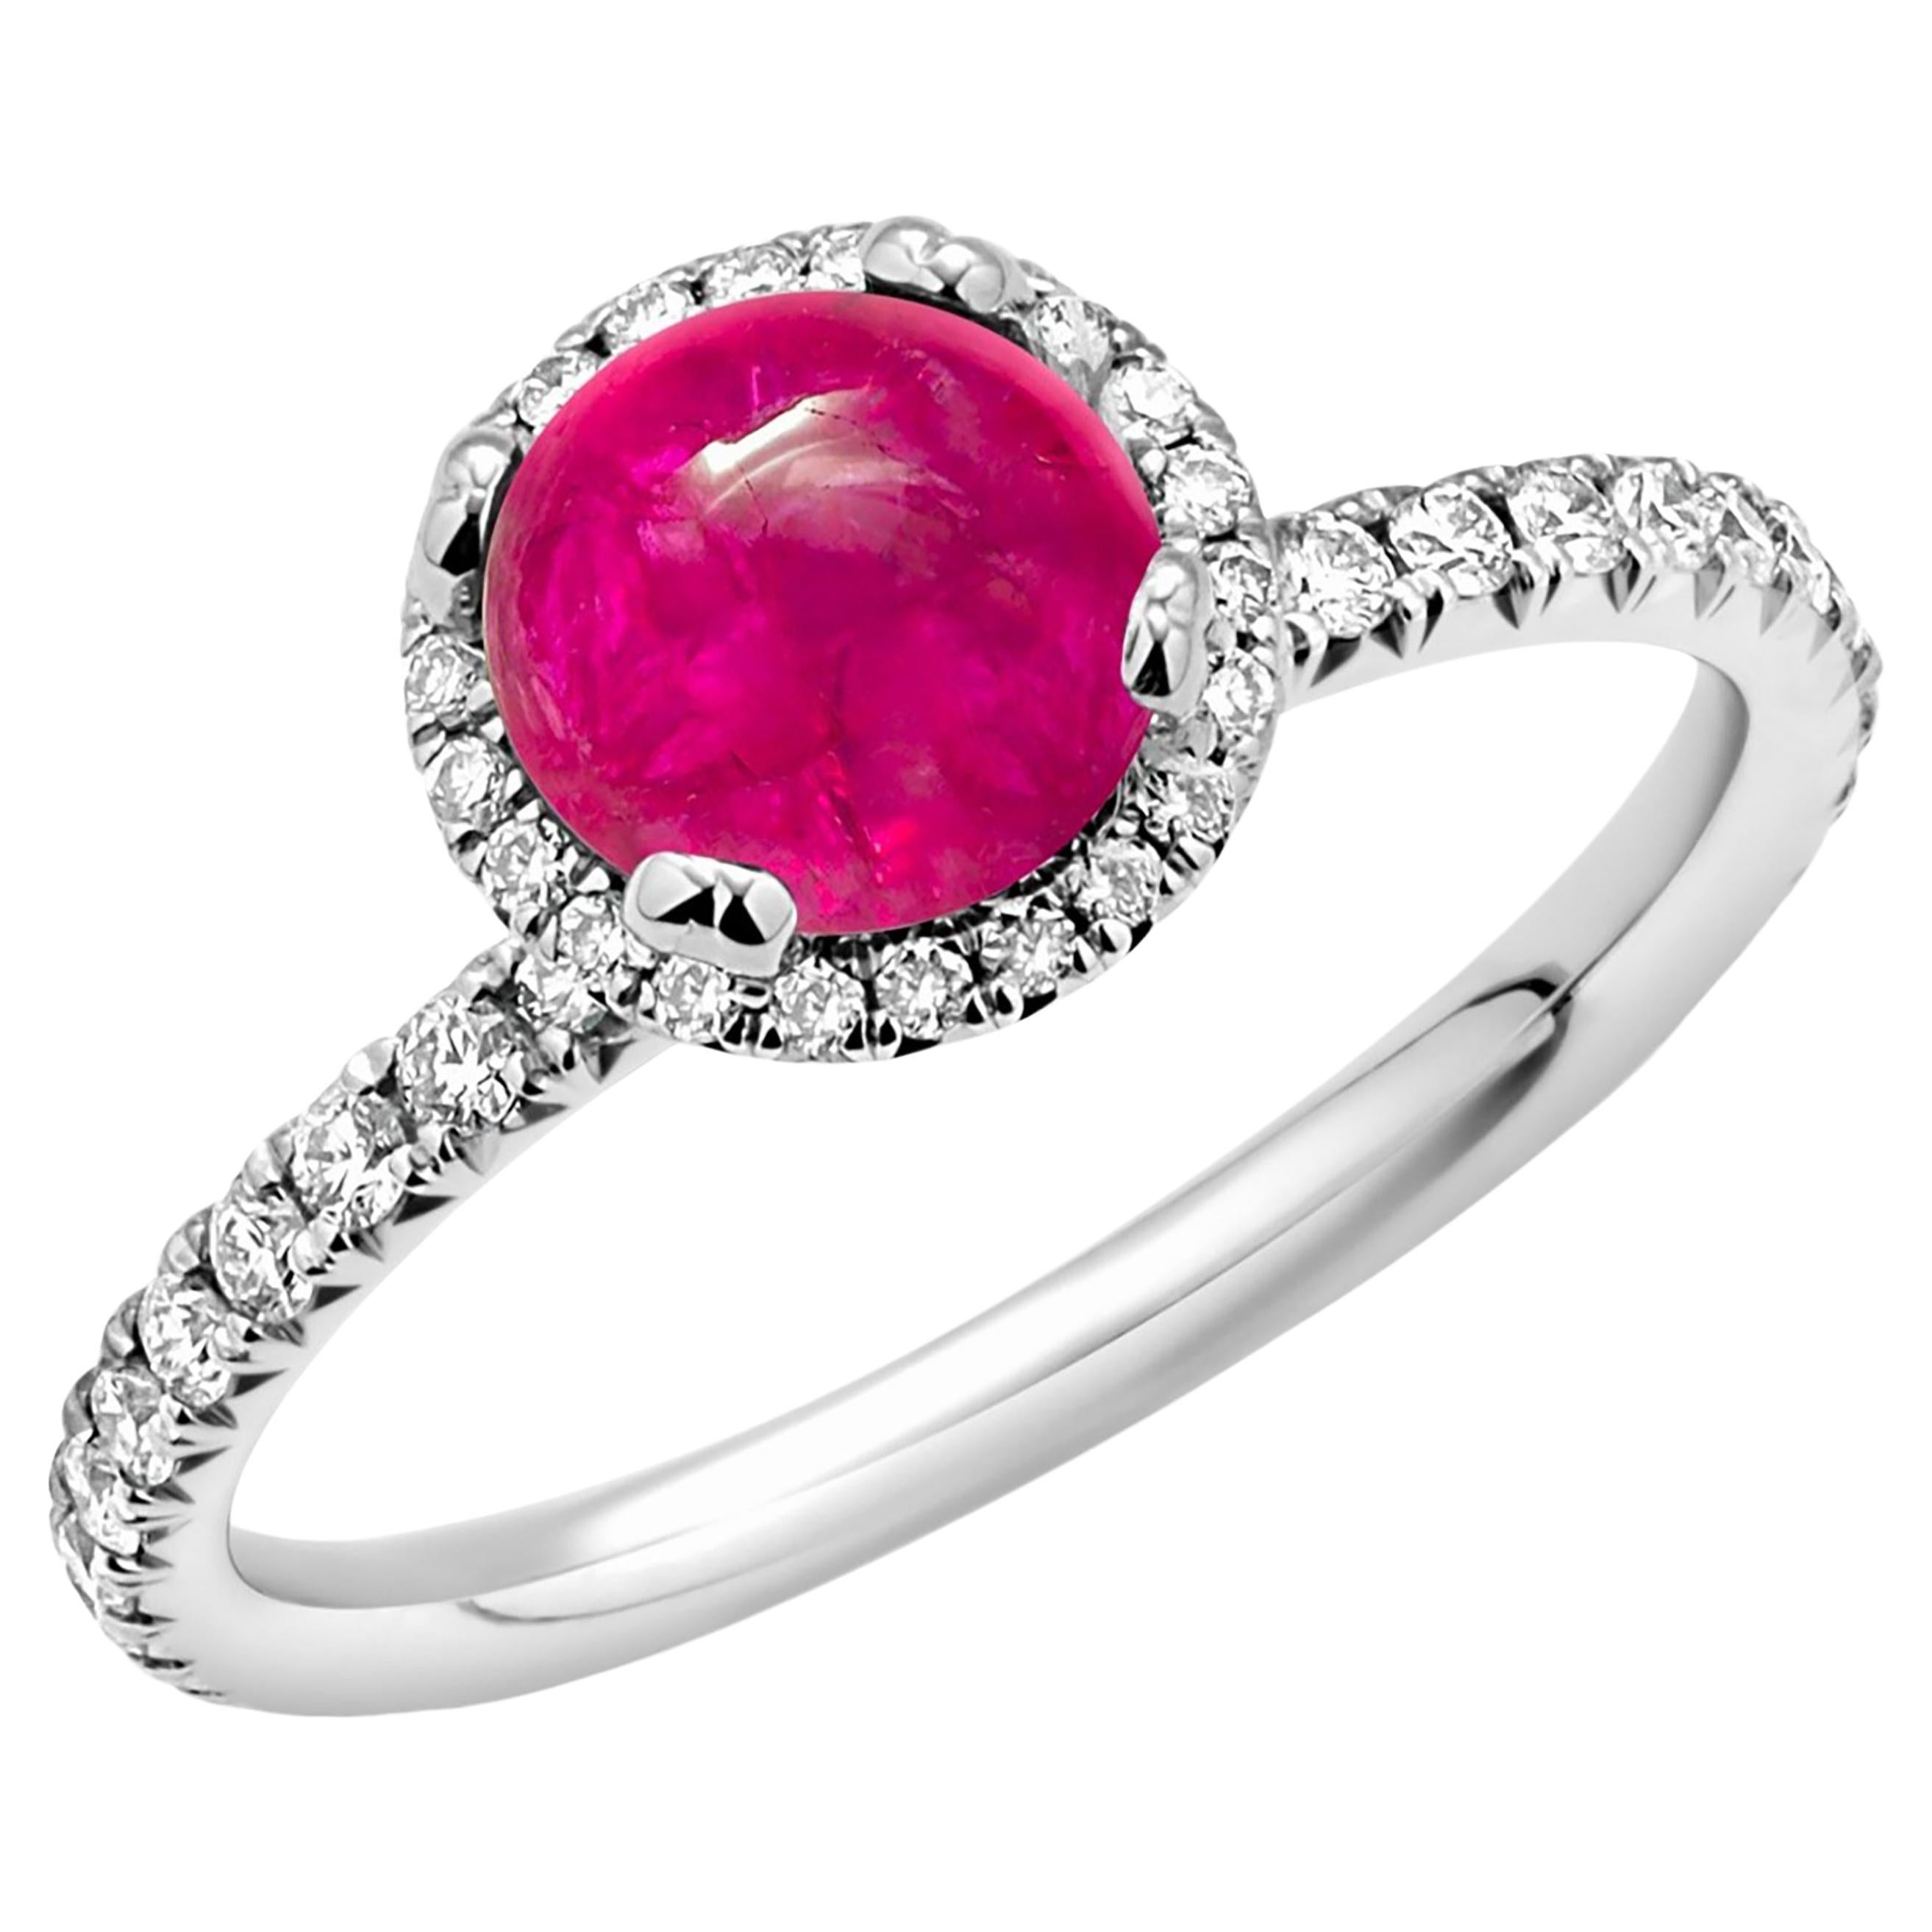 OGI Ltd Engagement Rings